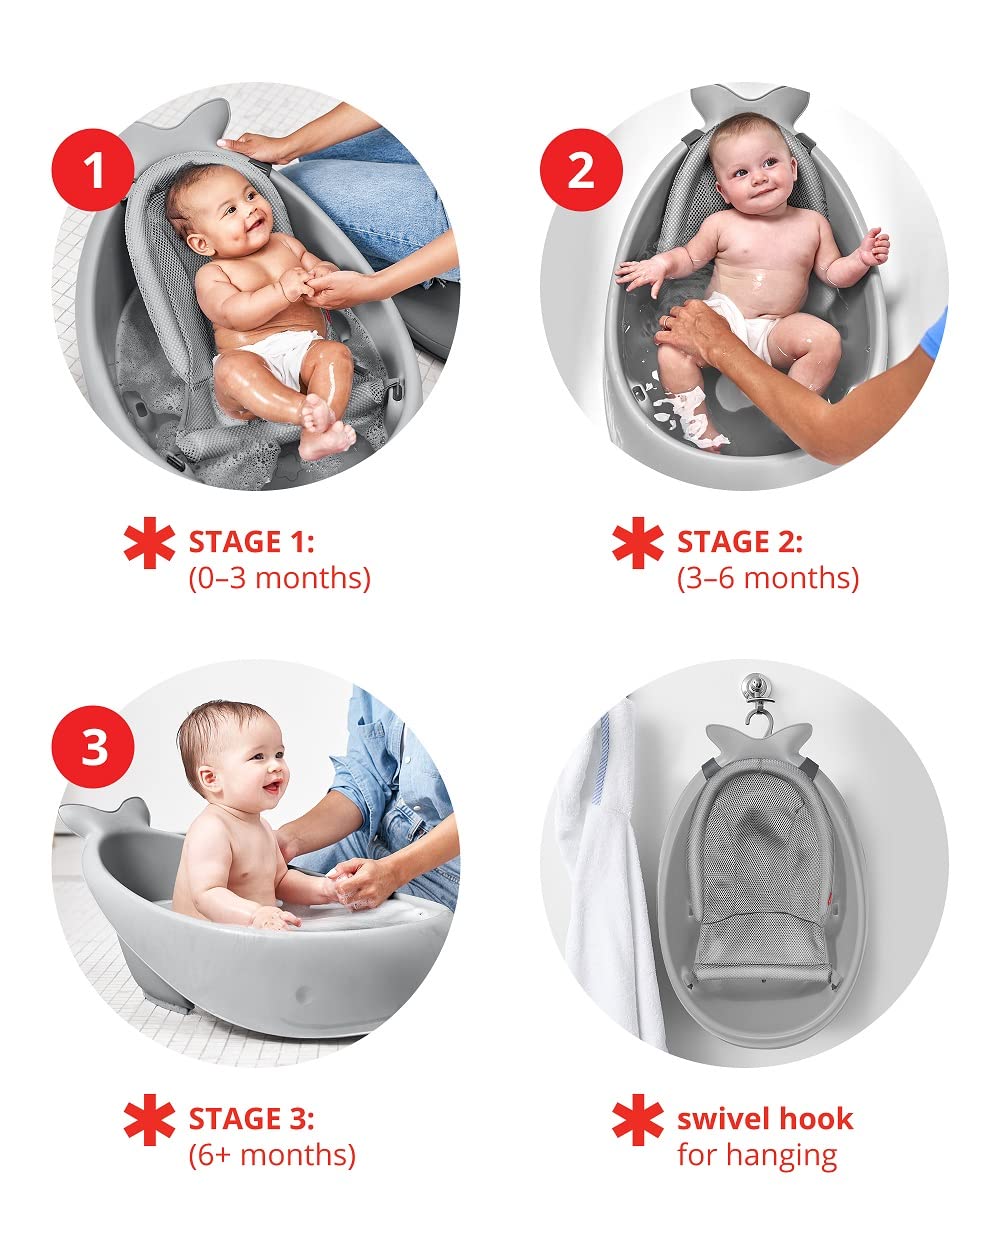 Skip Hop Baby Bath Tub, 3-Stage Smart Sling Tub, Moby, White